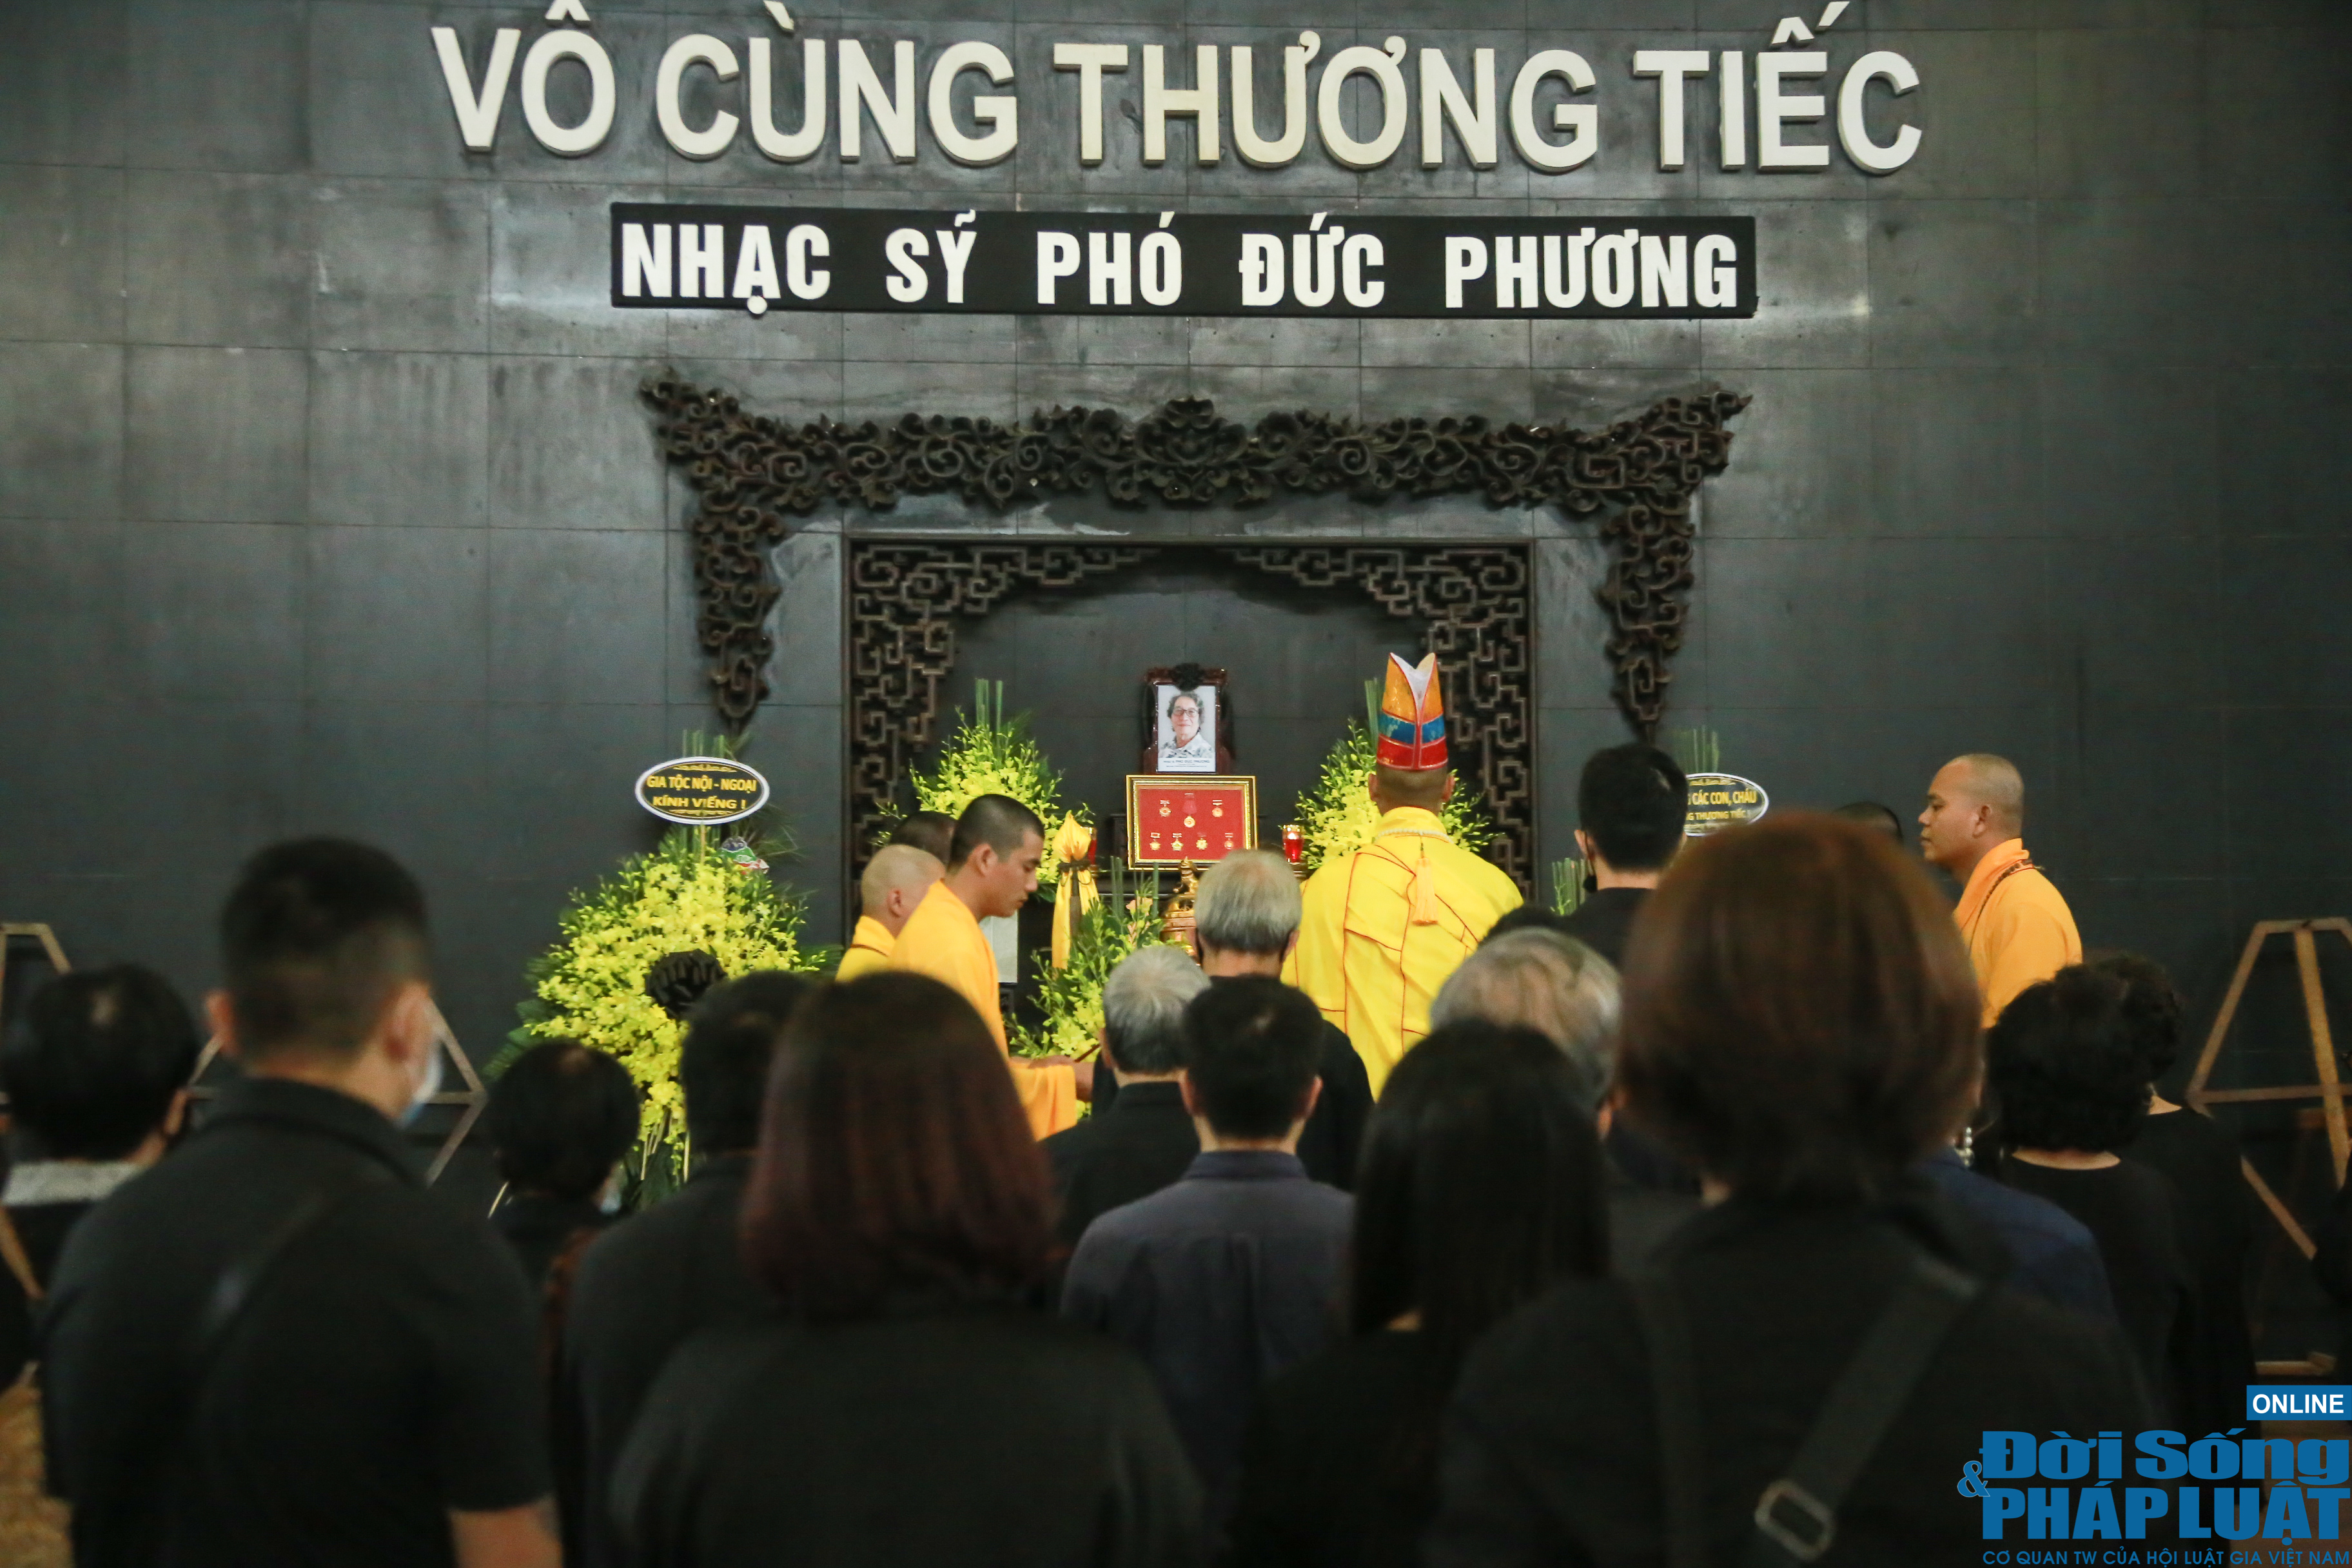 NSND Tiến Đạt, Tùng Dương, Thanh Lam và đồng nghiệp xúc động đưa tiễn nhạc sĩ Phó Đức Phương - Ảnh 13